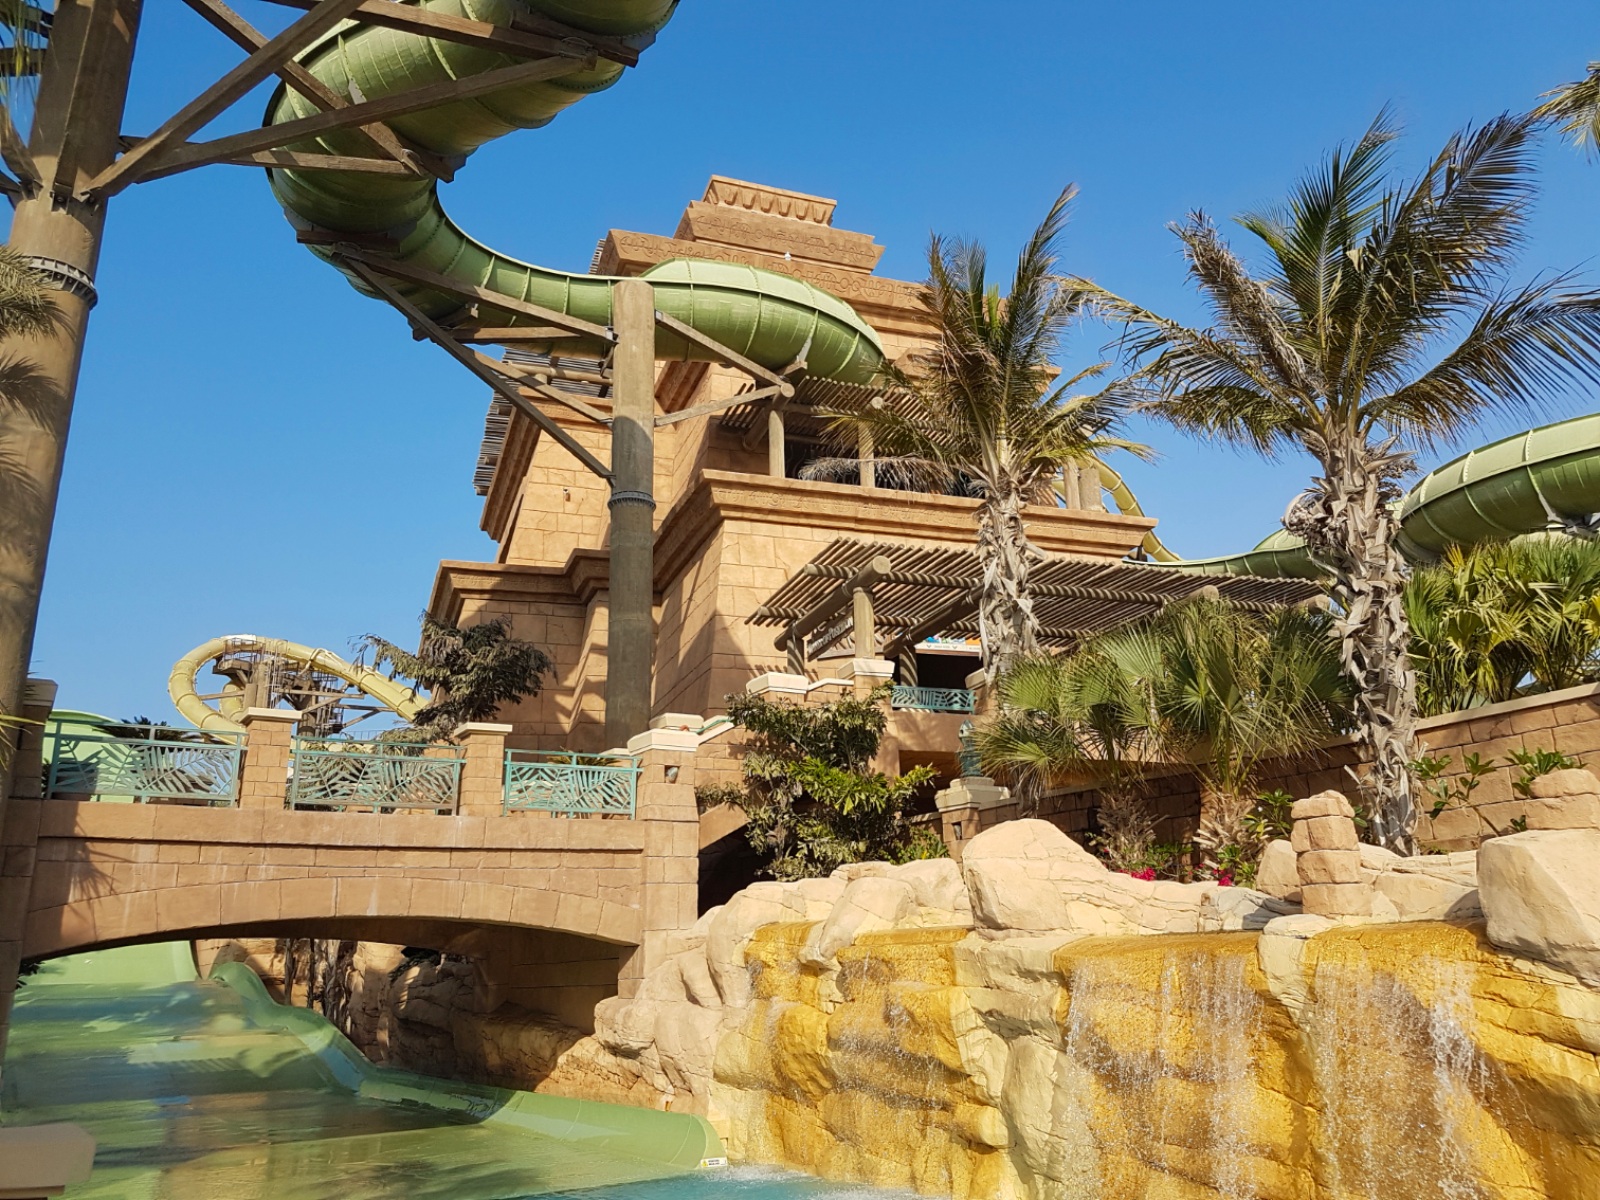 Аквапарк Aquaventure в Дубае - Аттракцион Зумеранго